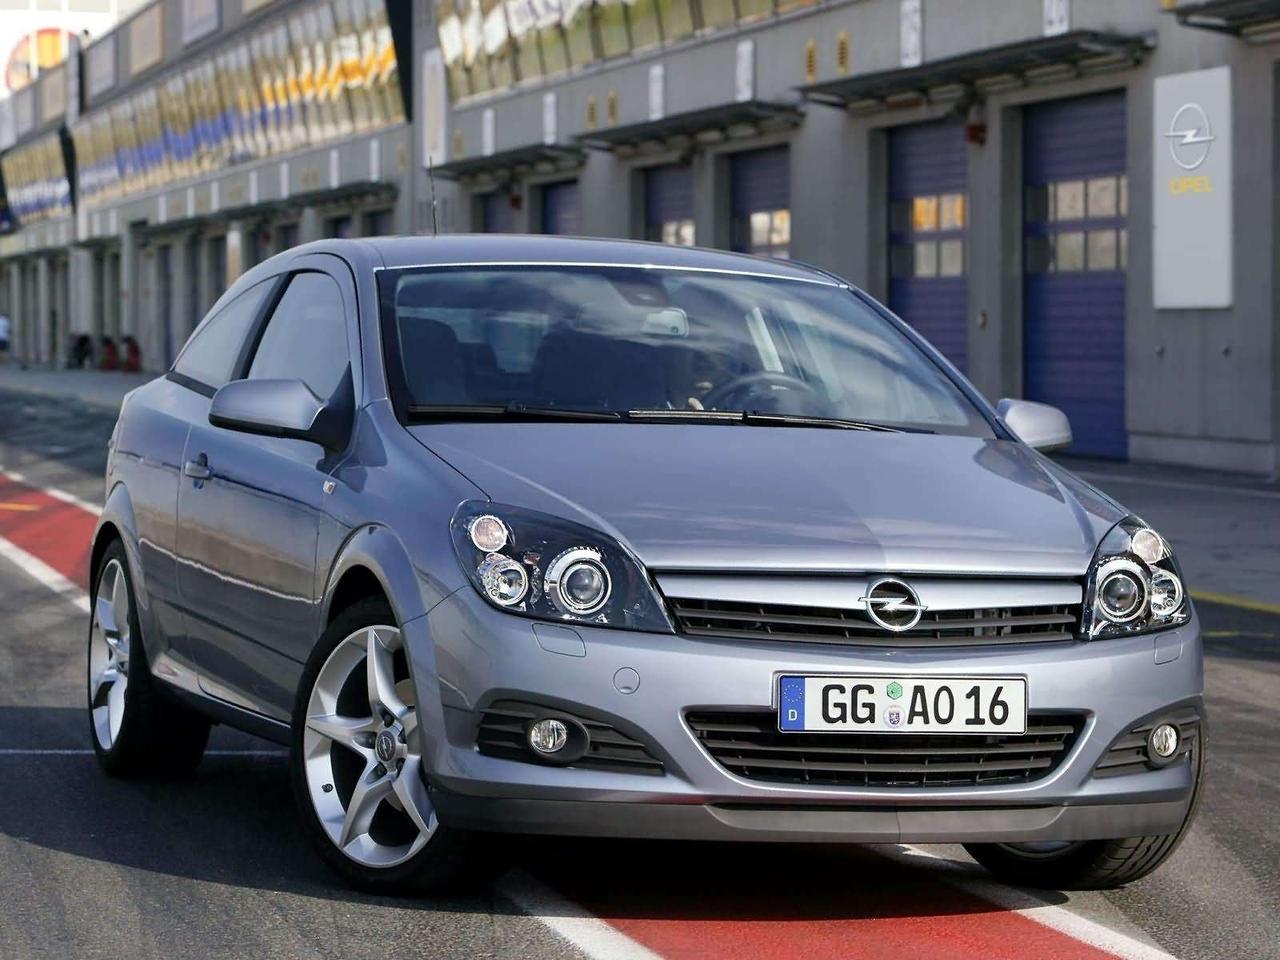 Переходные рамки на Opel Astra III (2004-2011) адаптивная система освещения AFL; Bi-LED Adaptive Series